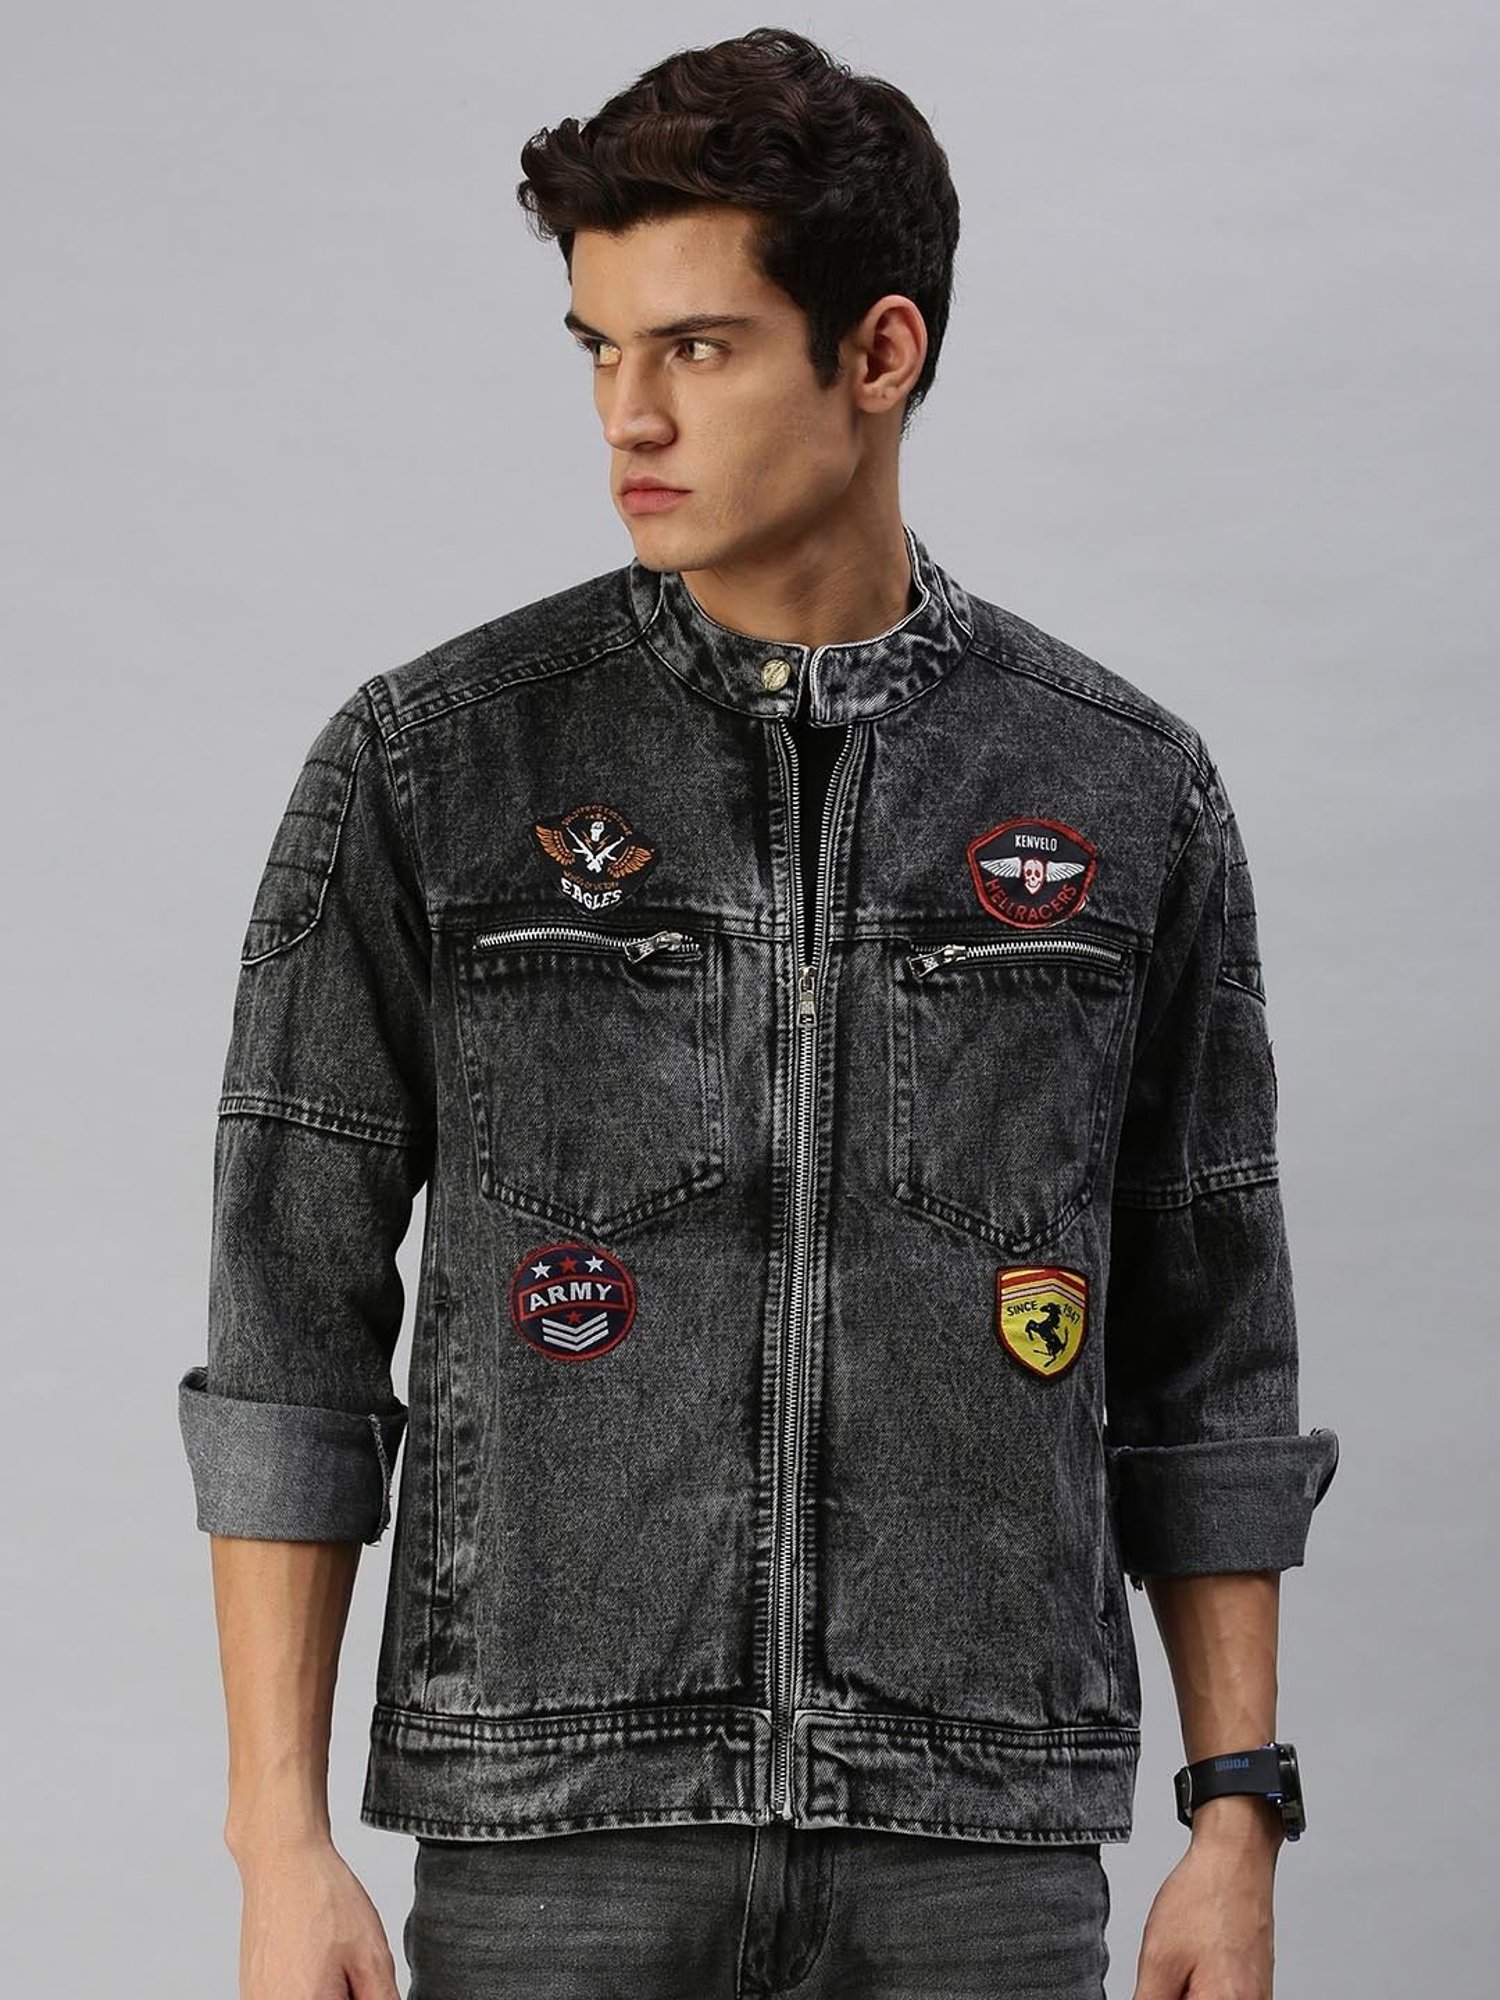 Billy Jack Denim Jacket by Magnoli Clothiers